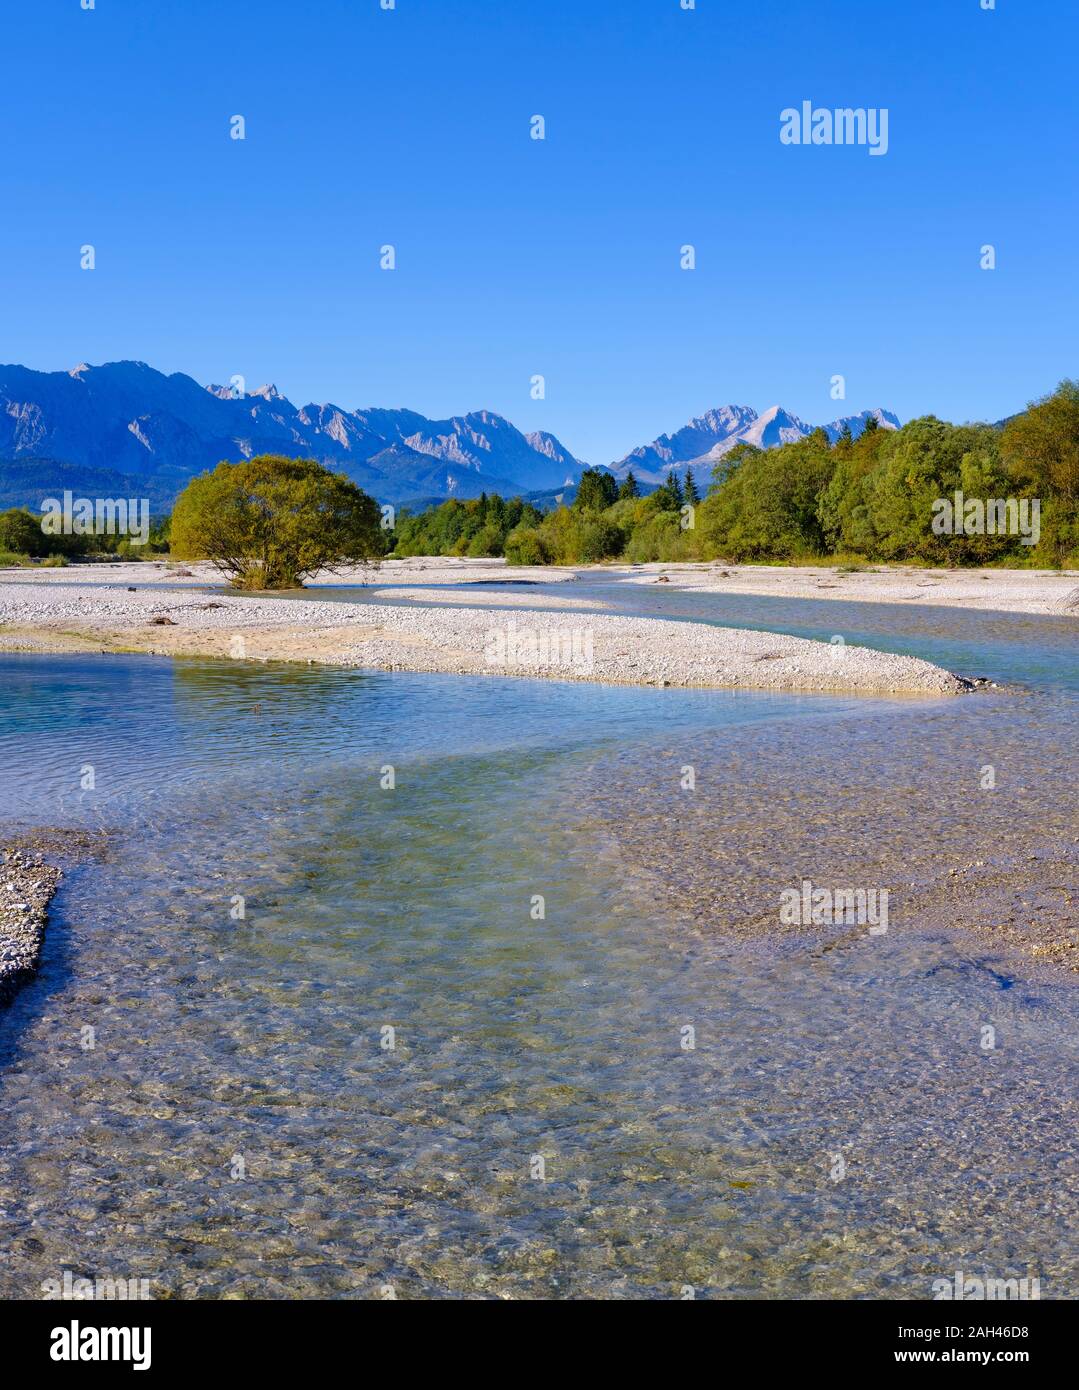 In Germania, in Baviera, Wallgau, vista panoramica del fiume Isar con montagne del Wetterstein che incombe in background Foto Stock